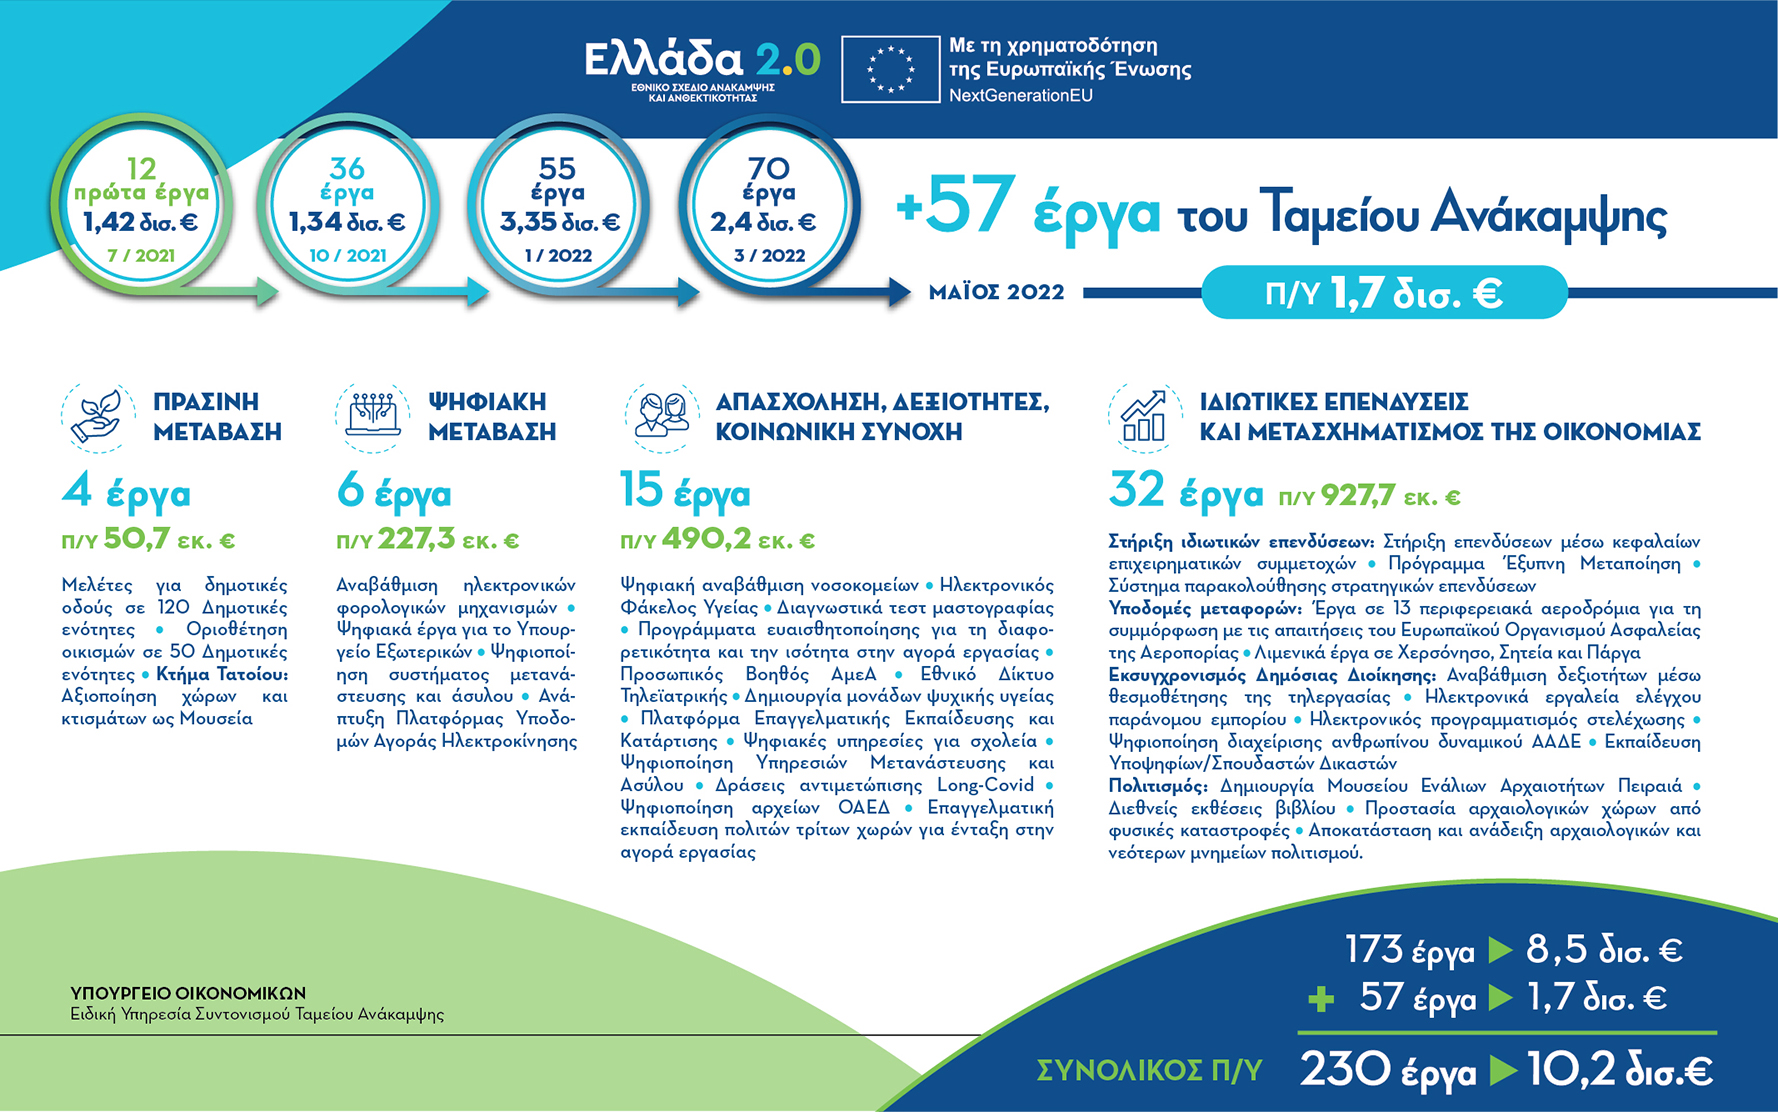 Greece_2.0_infographic_57erga_v3_1.jpg